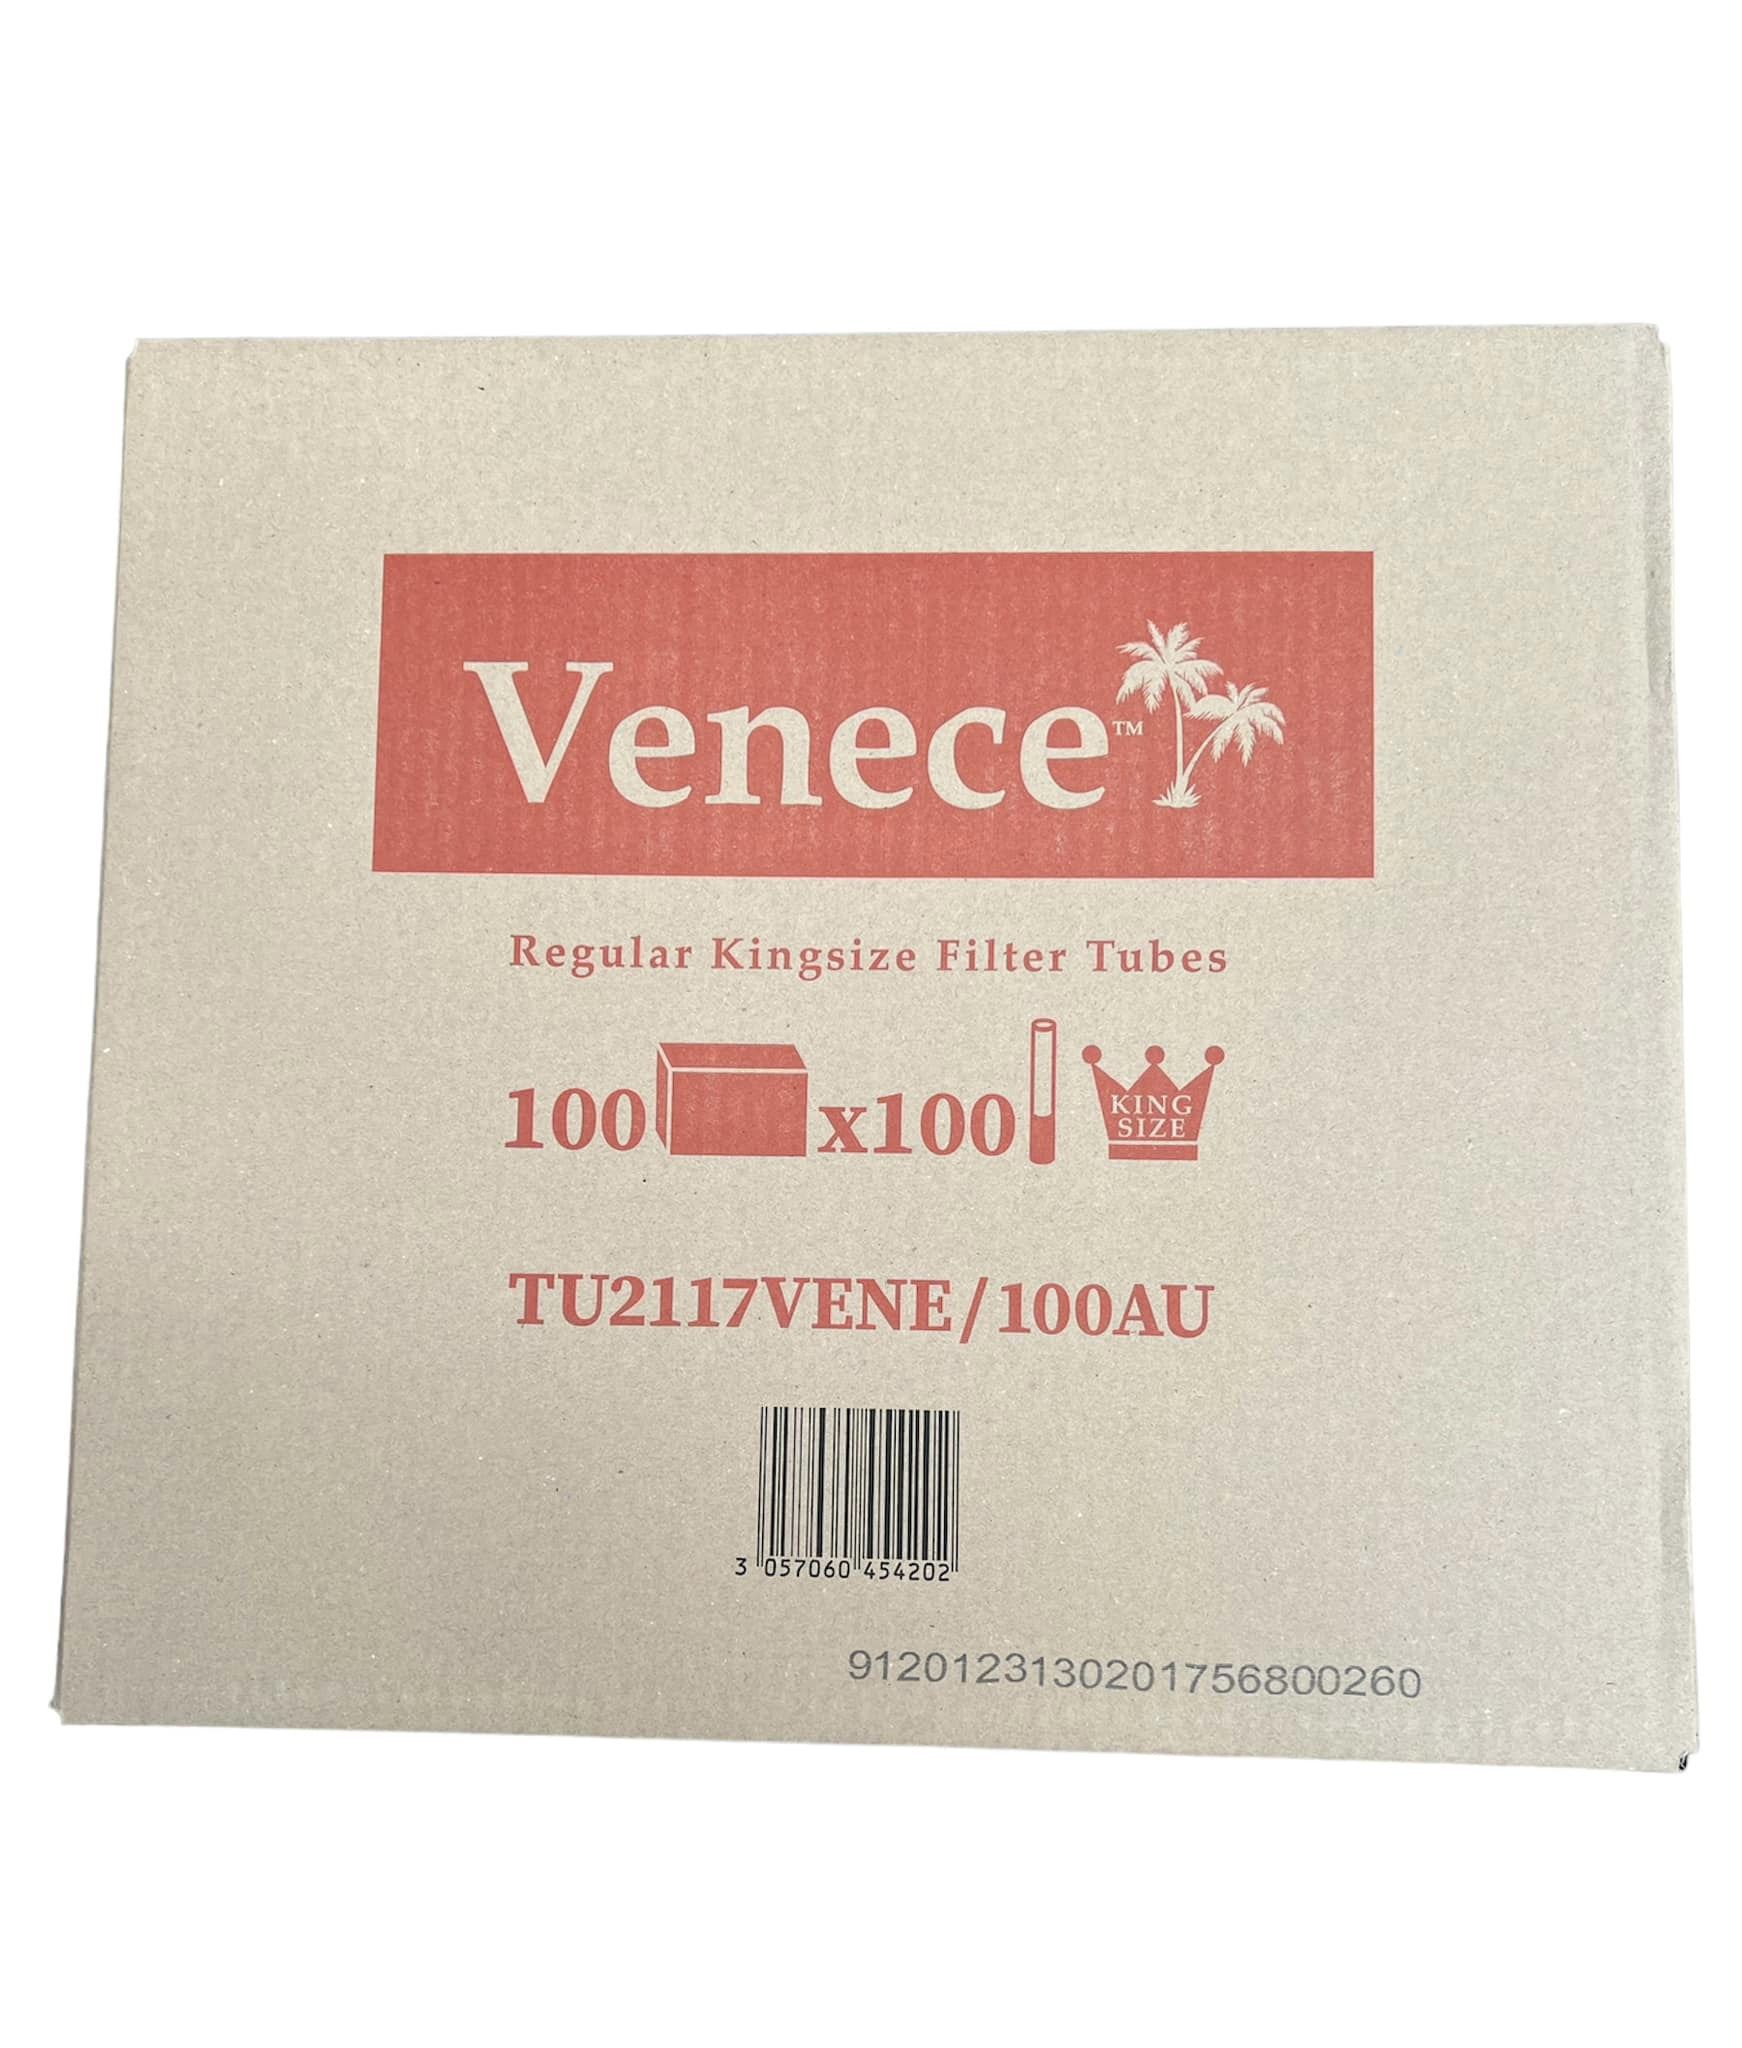 1100 Venece Regular filter tubes king size 100 packaged boxes =